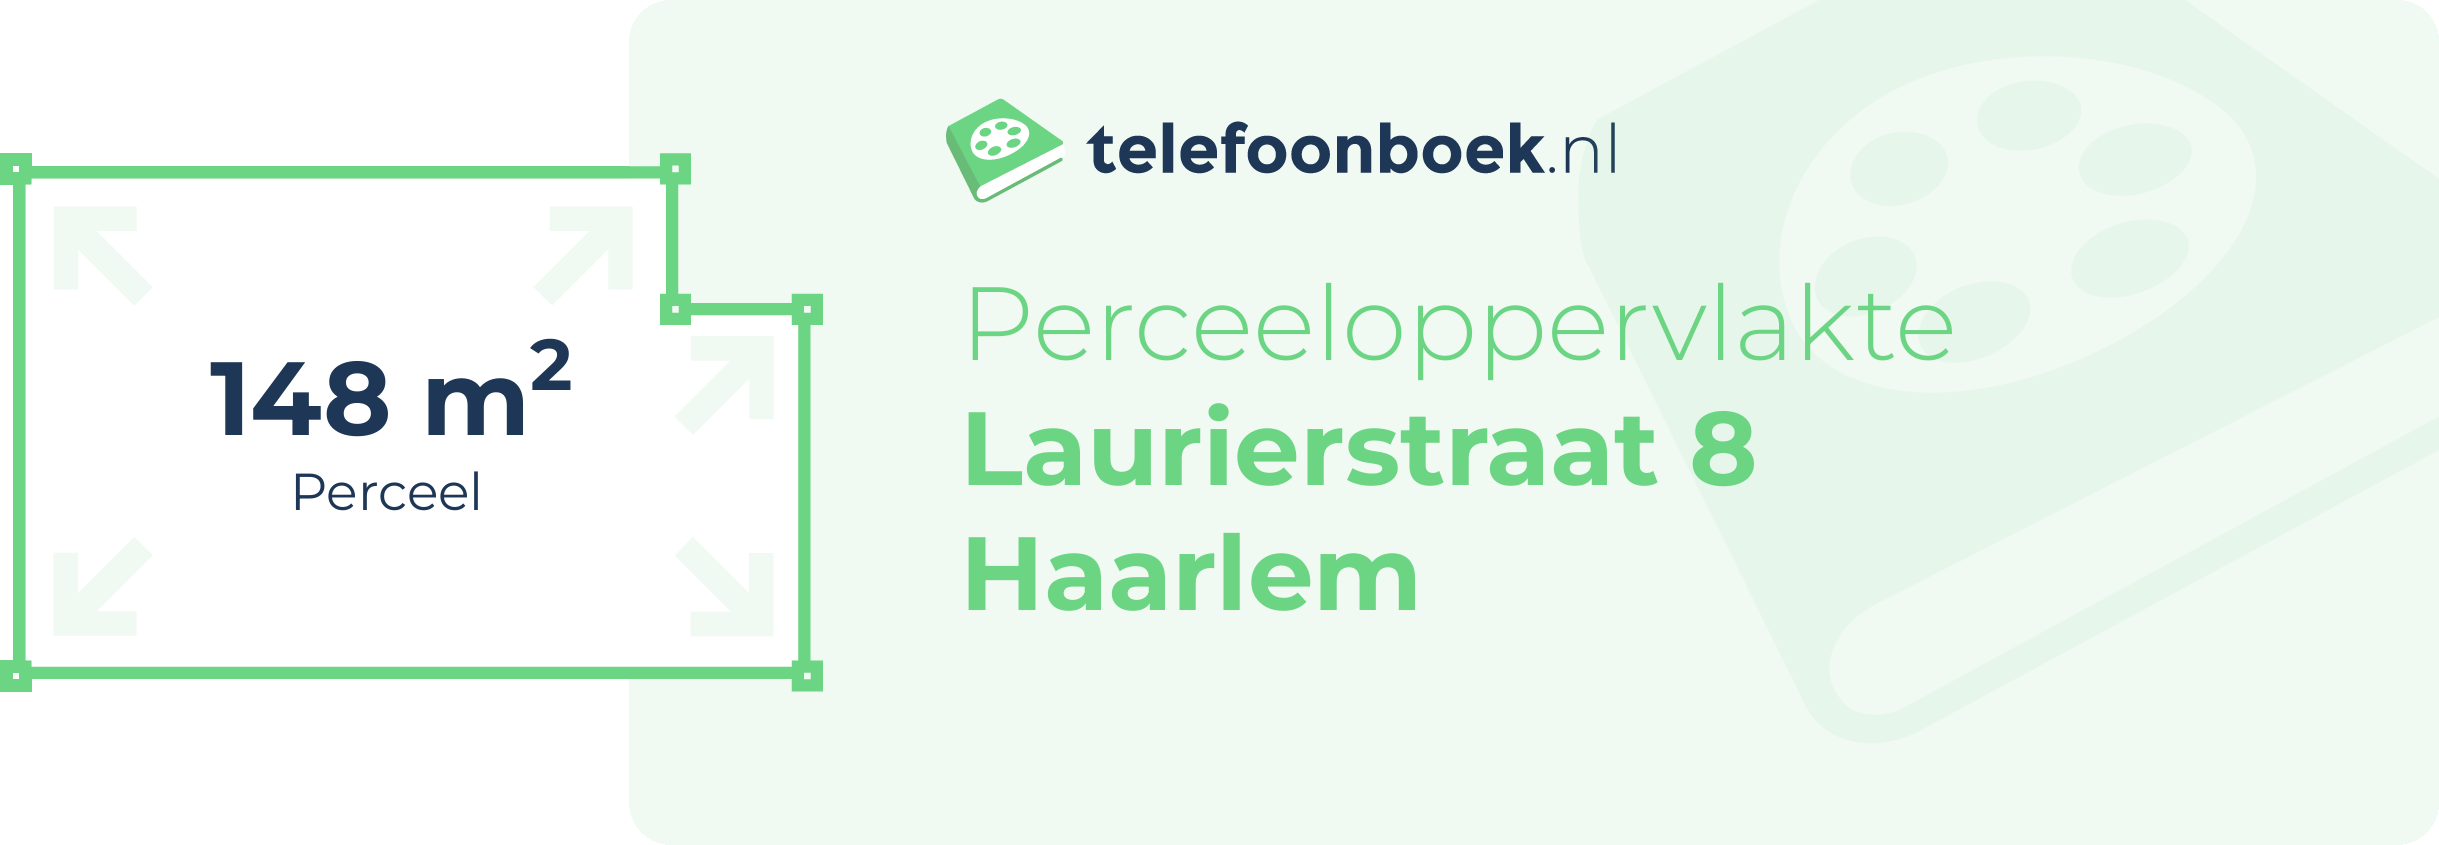 Perceeloppervlakte Laurierstraat 8 Haarlem